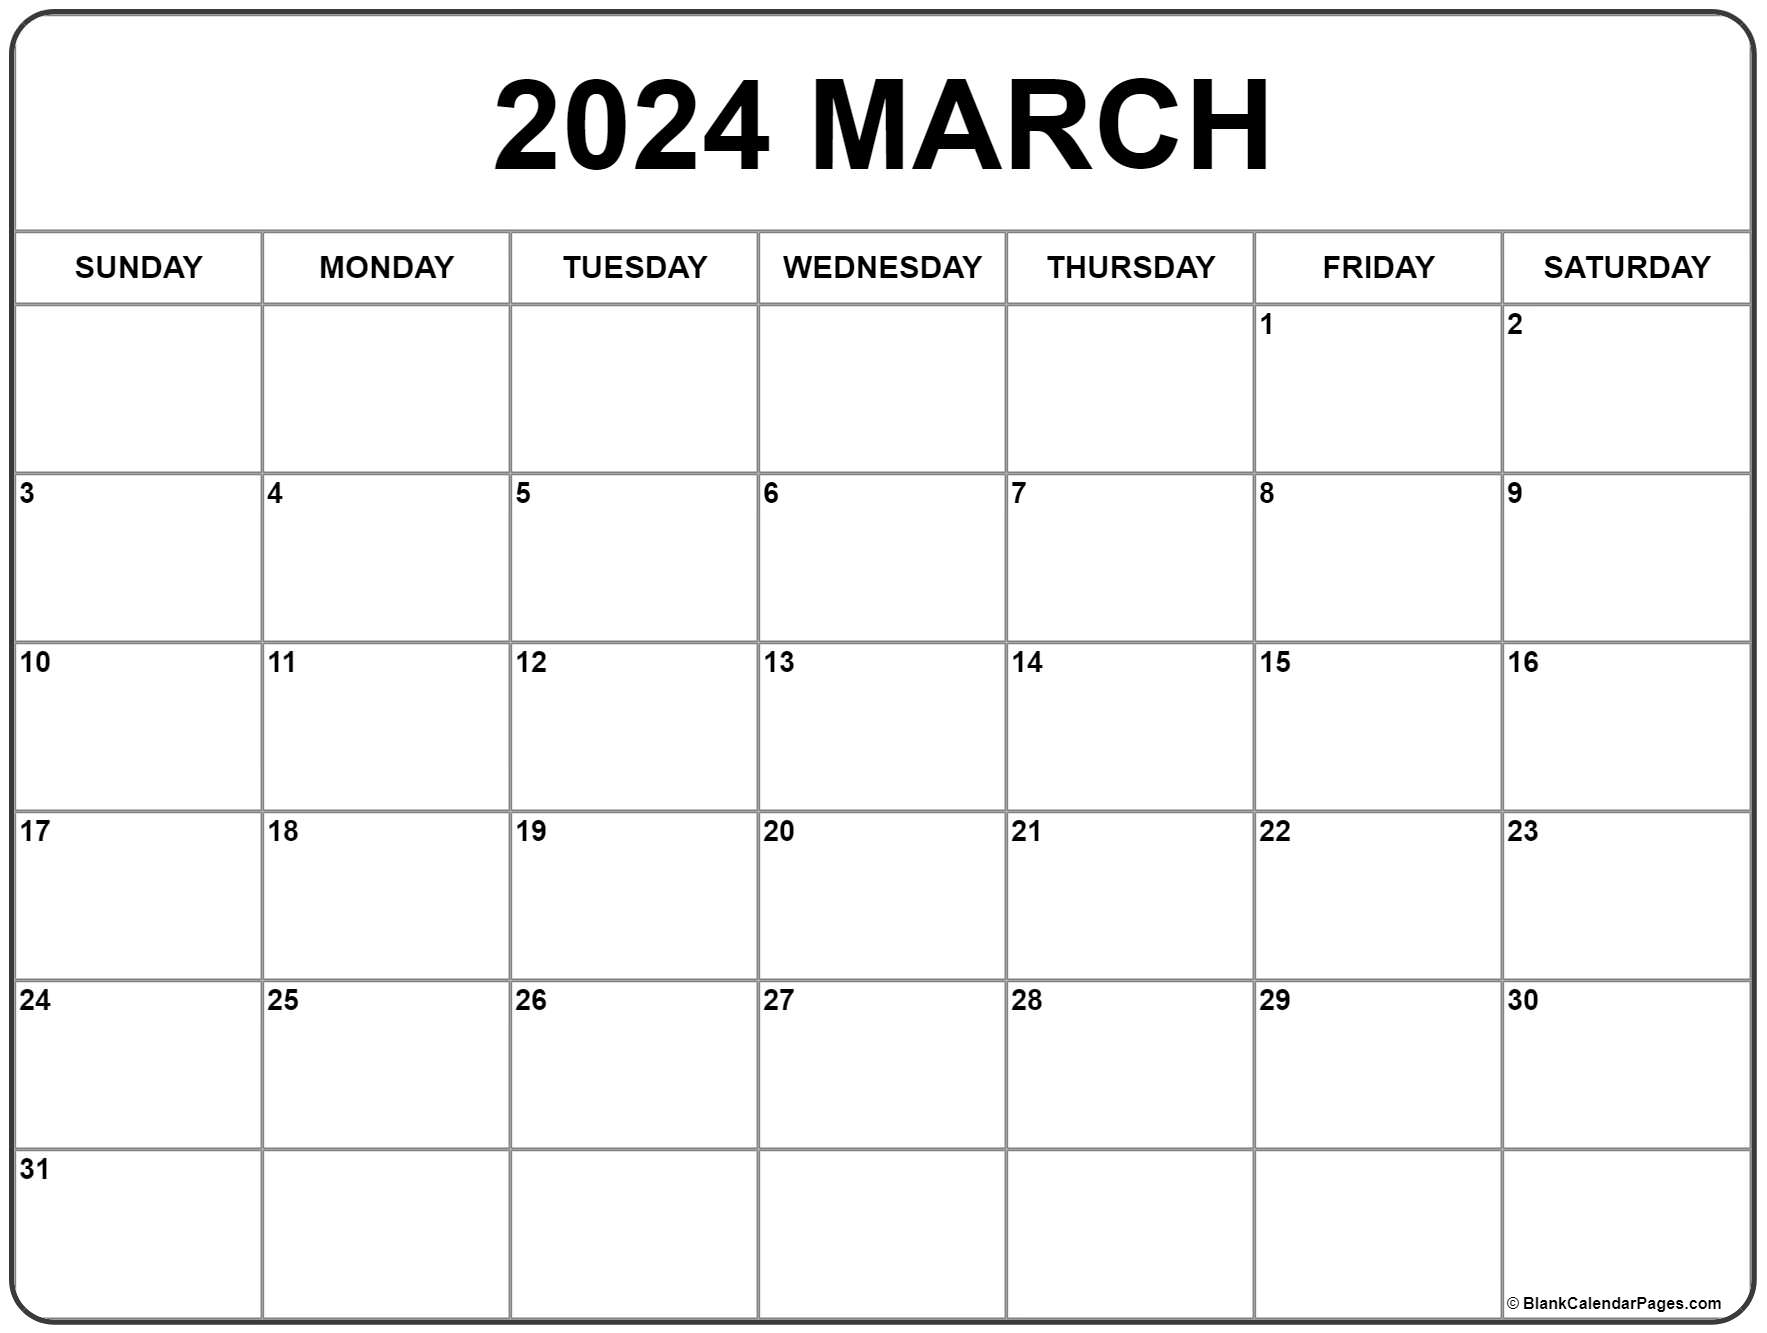 Mar 2022 Calendar Printable March 2022 Calendar | Free Printable Calendar Templates